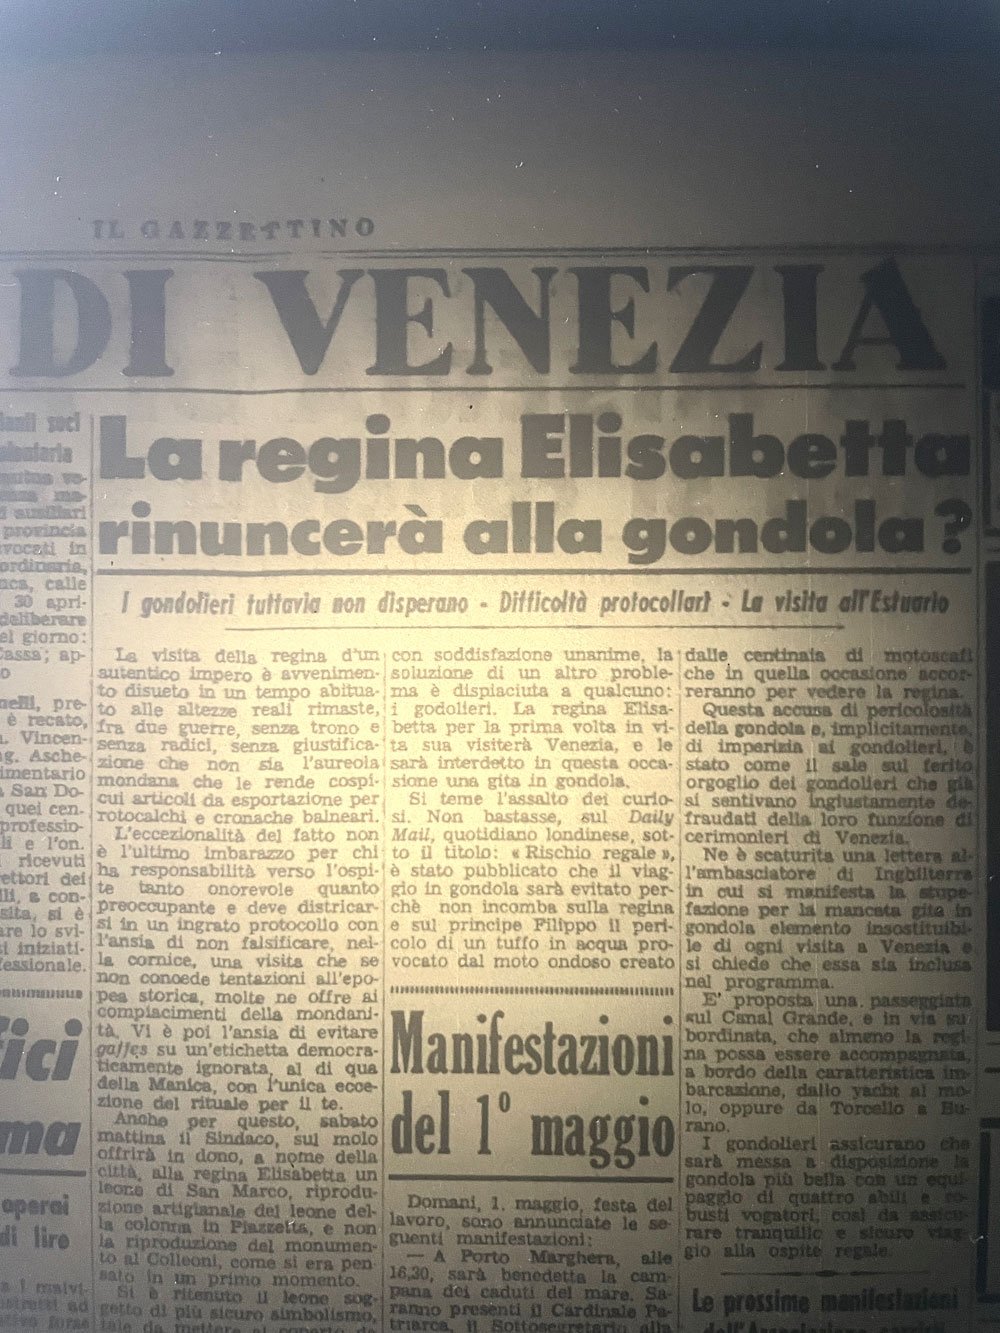 Research-Gazzettino-di-Venezia-1000.jpg